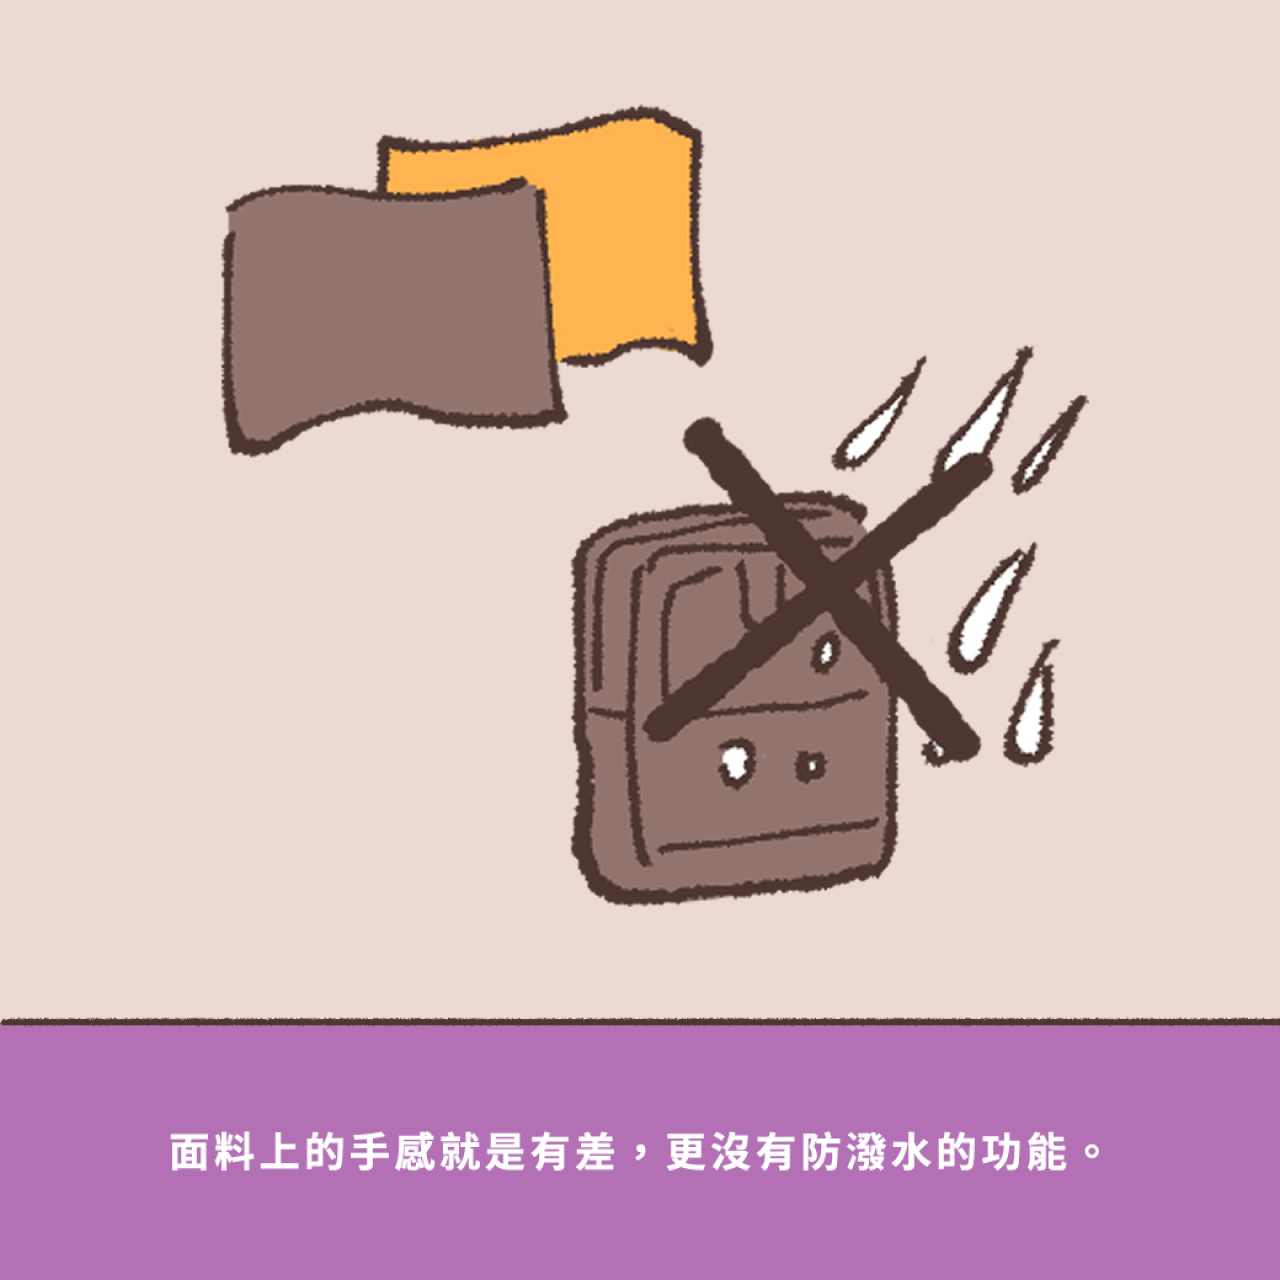 pm旅行小包,旅行小包,小包,小包包,原創設計,設計解密,包包設計